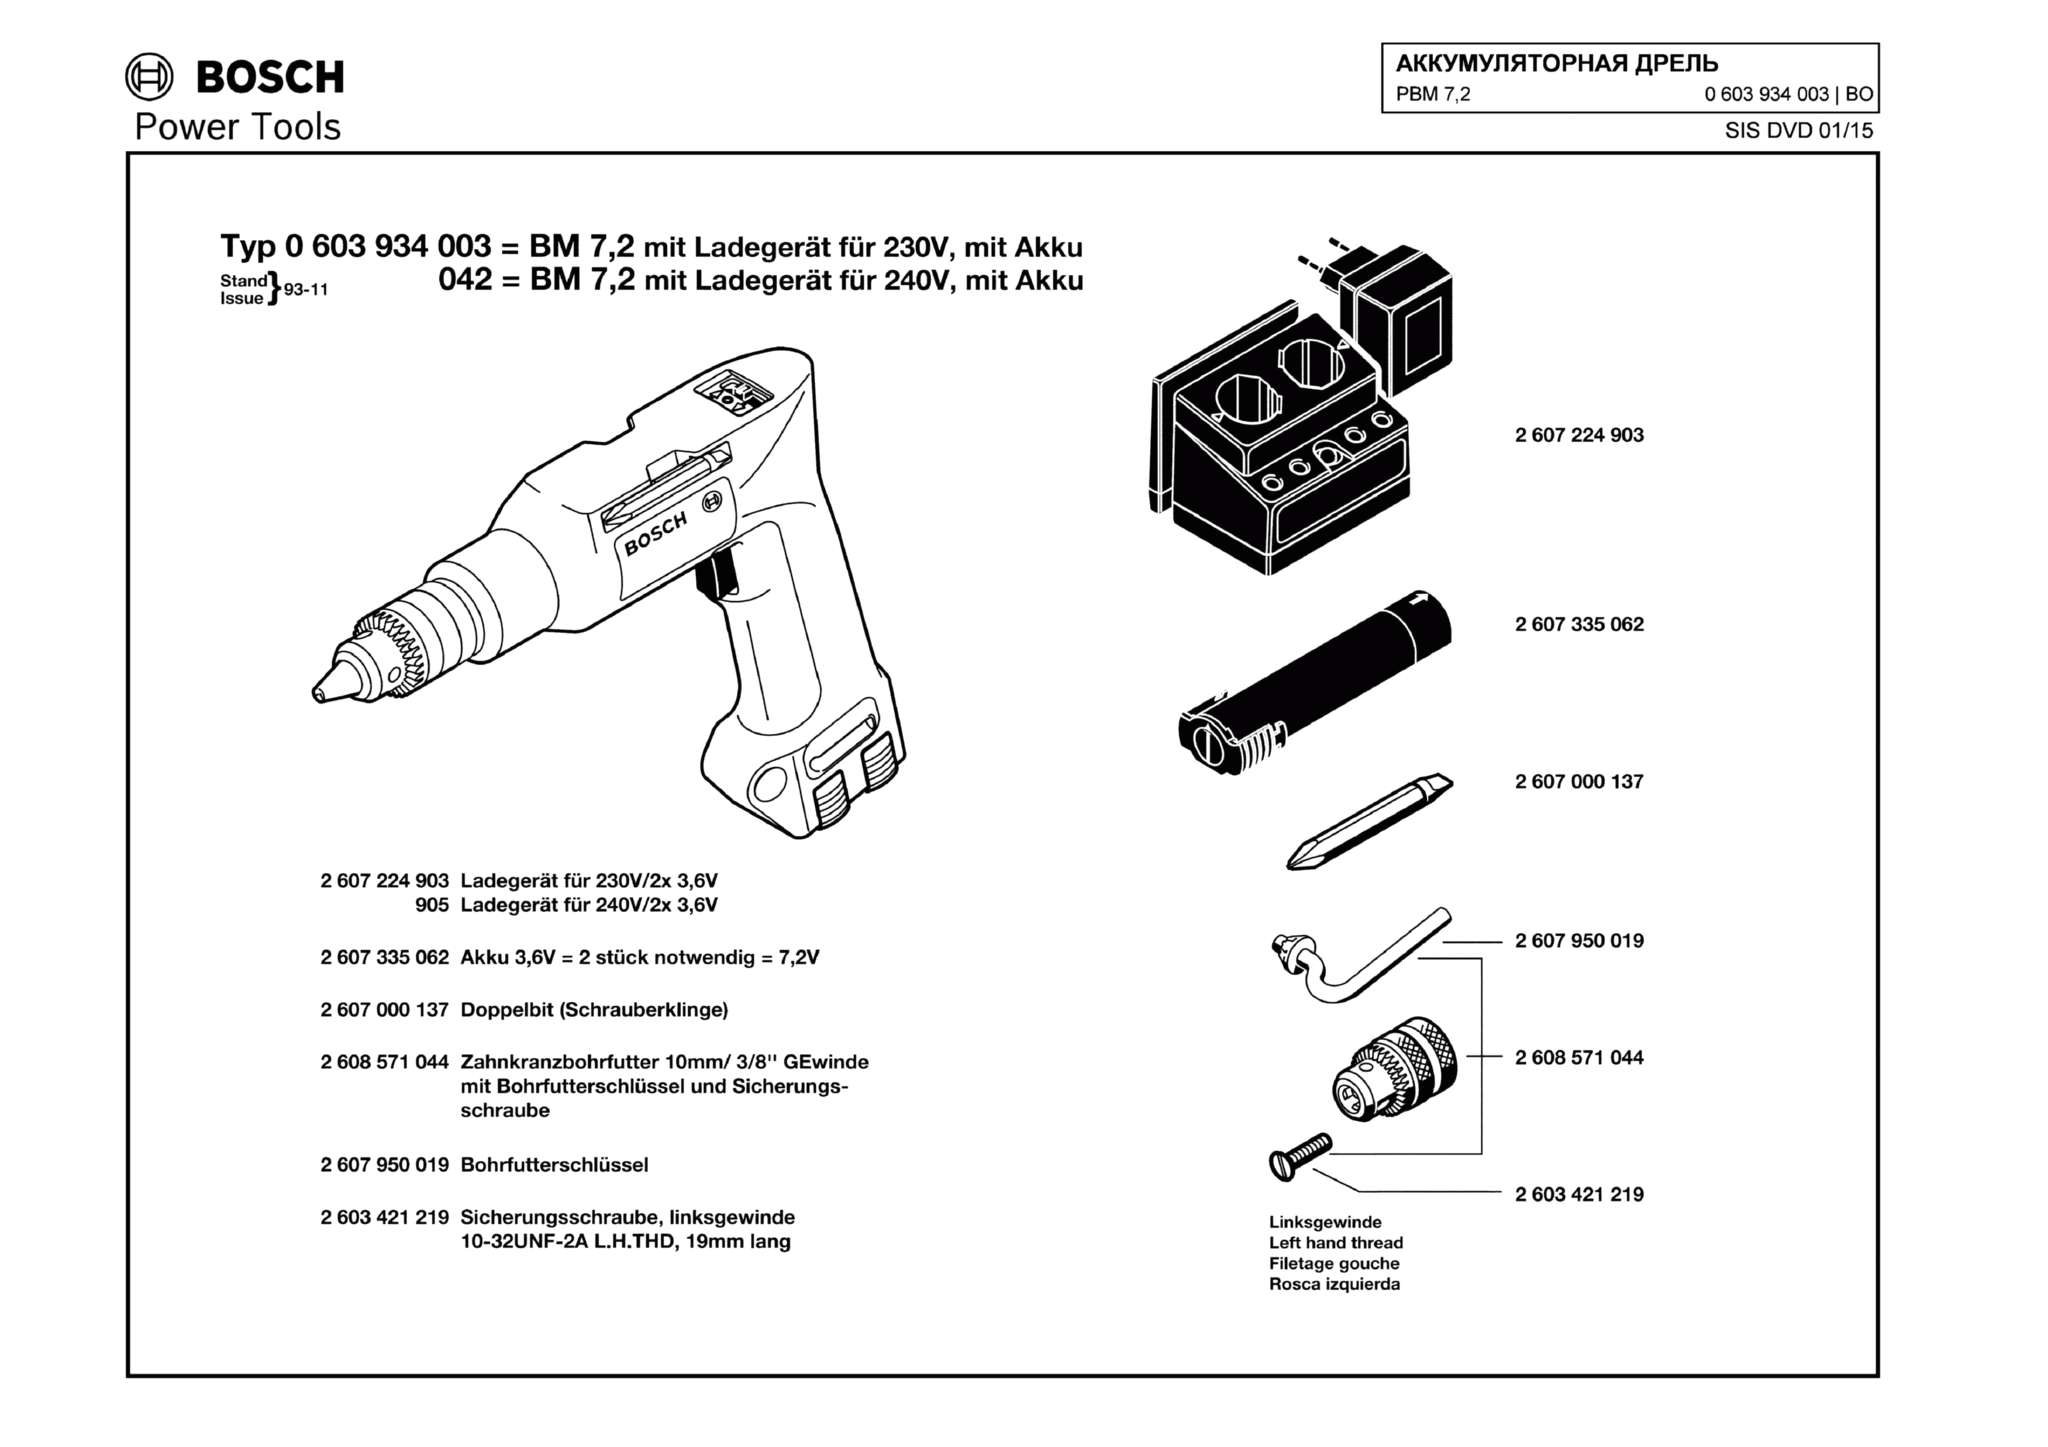 Запчасти, схема и деталировка Bosch PBM 7,2 (ТИП 0603934003)